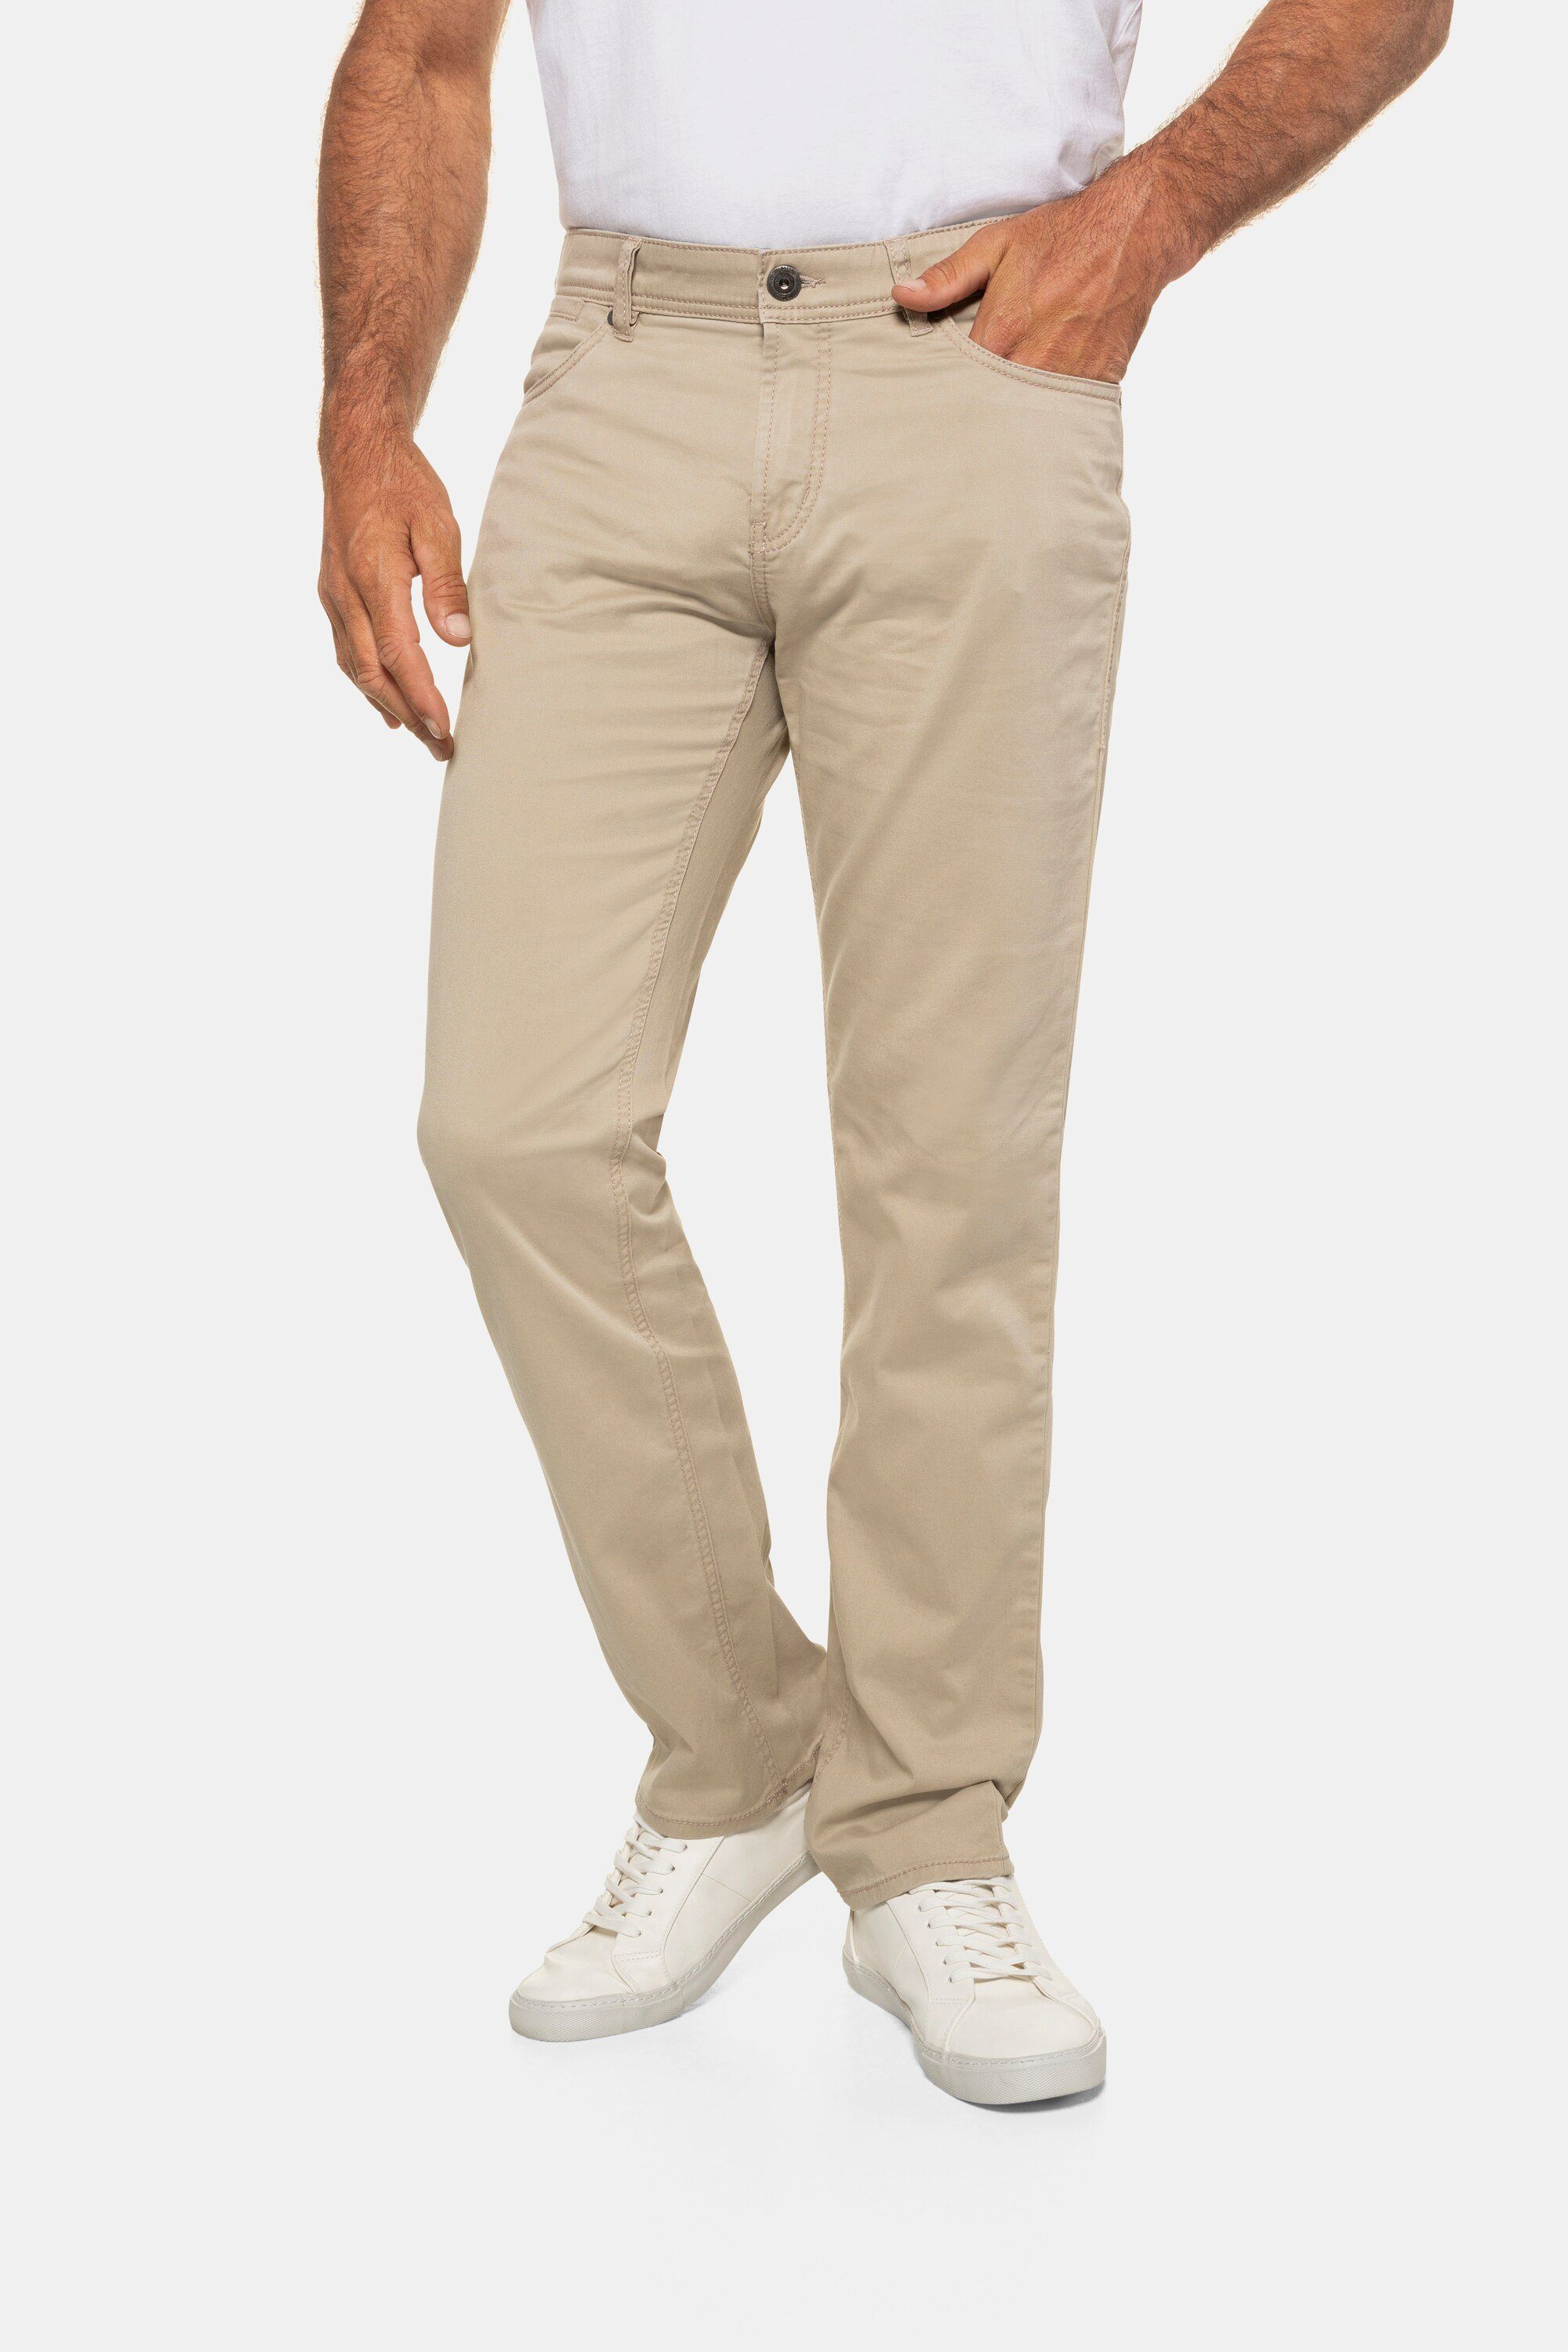 JP1880 5-Pocket-Jeans Twillhose Bauchfit bis Größe N-70/U-35 sand